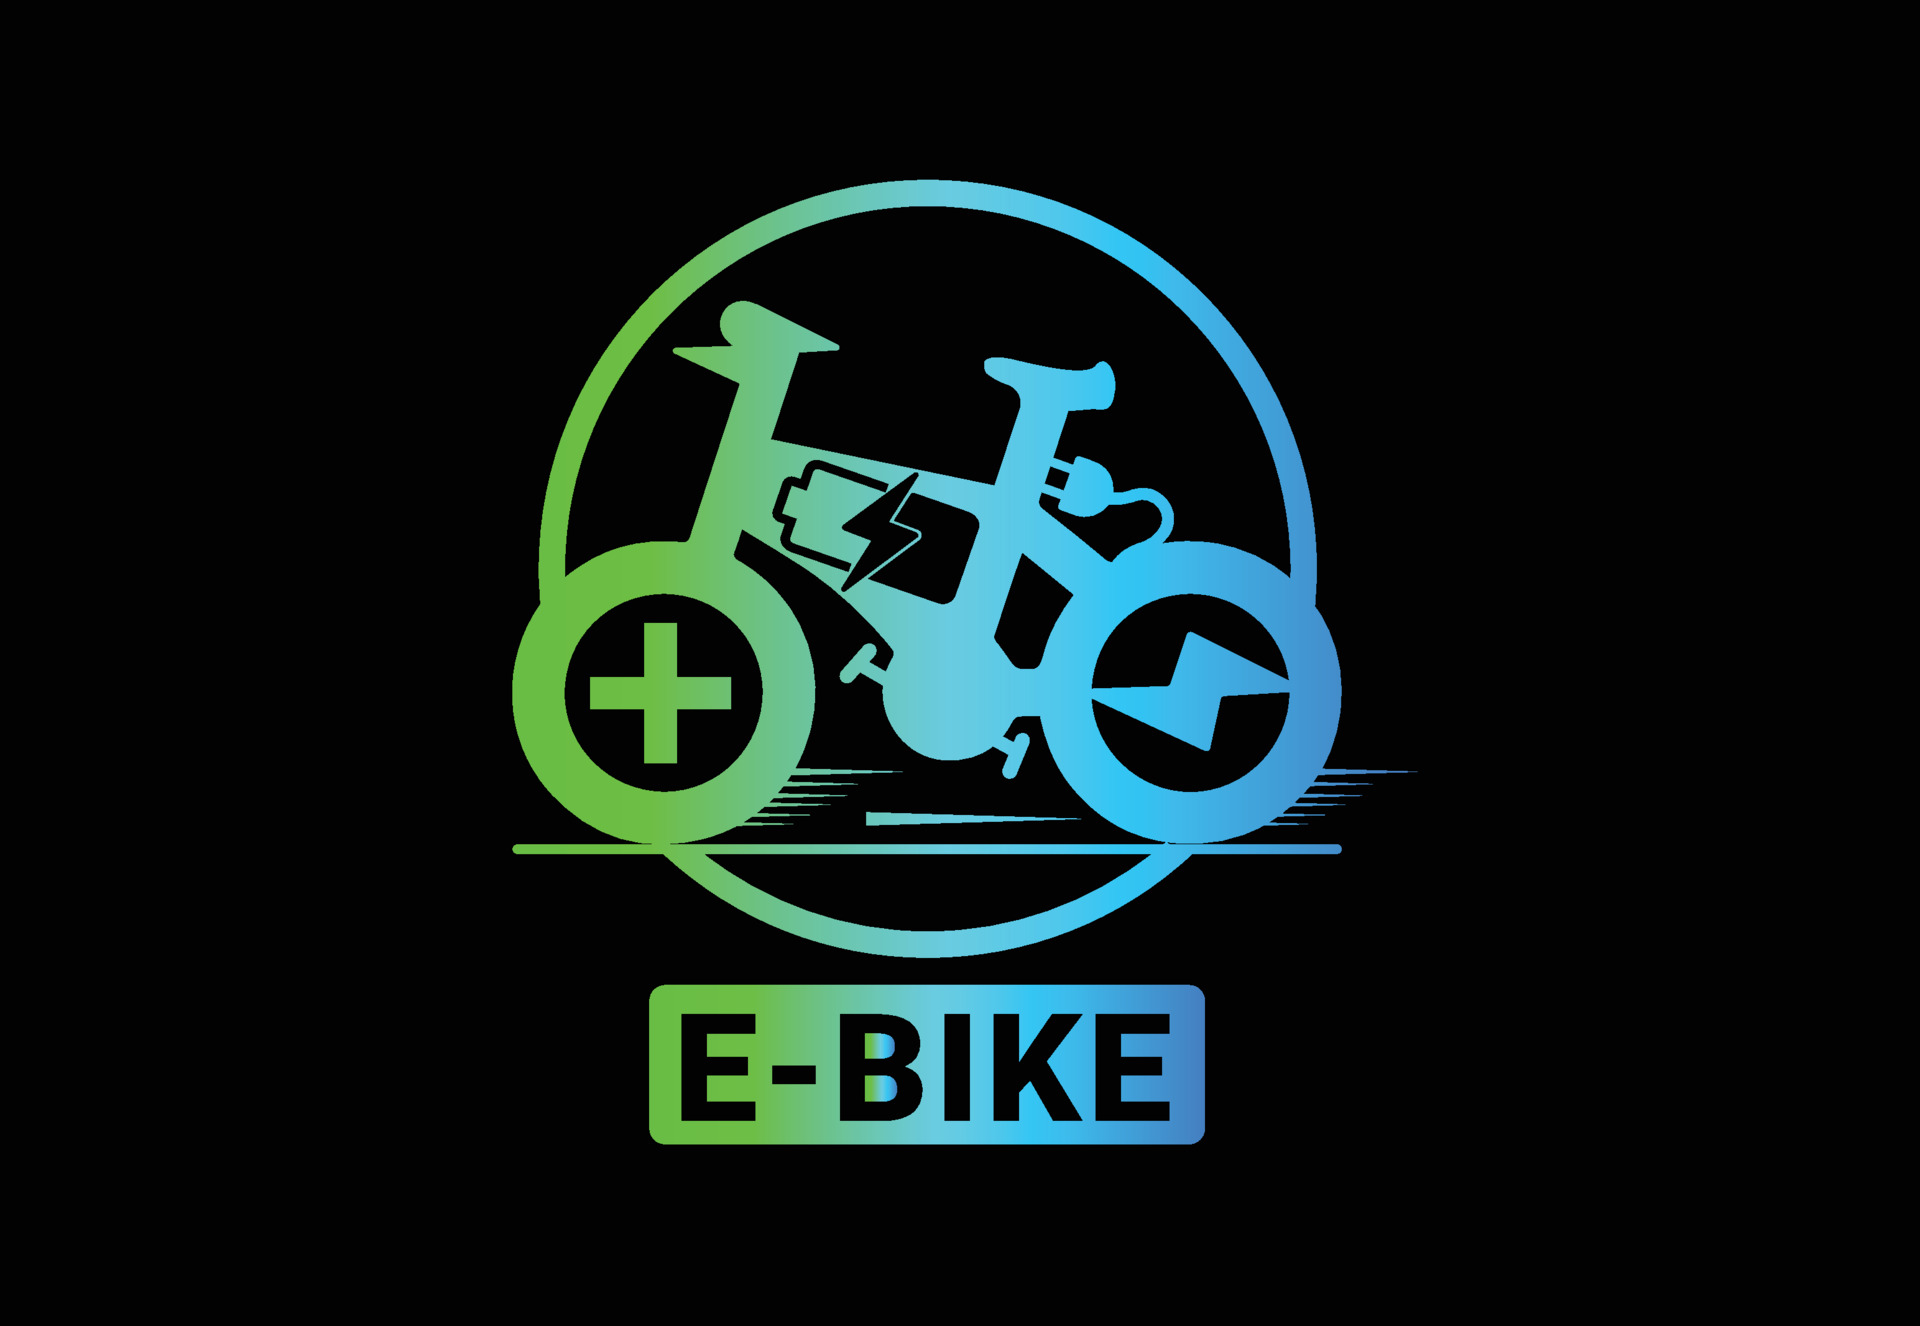 Bilden visar en grafisk illustration av en elcykel, ofta kallad "E-BIKE". Cykelns silhuett är framställd i ljusblåa och gröna färger mot en svart bakgrund. Ovanför och nedanför cykeln finns symboler för elektricitet och en plustecken. Längst ner på bilden finns texten "E-BIKE" i grönt, vilket framhäver att det handlar om en elektrisk cykel. Designen är modern och ger intrycket av innovation och miljövänlighet